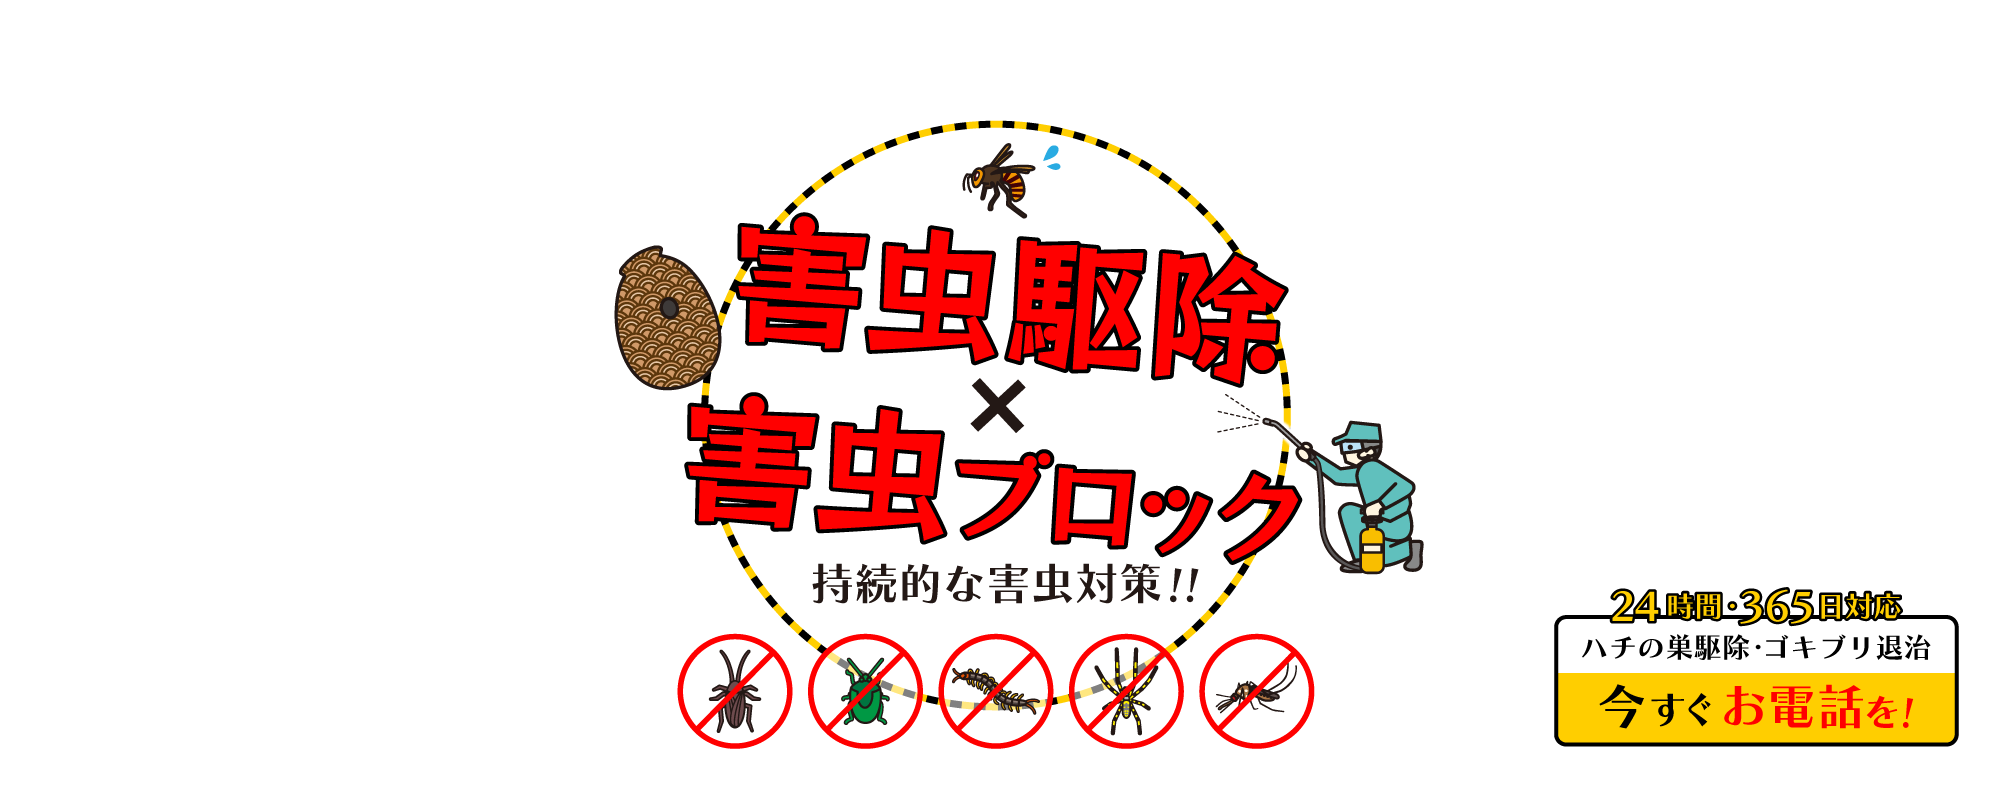 害虫駆除と害虫ブロックで持続的な対中対策を。